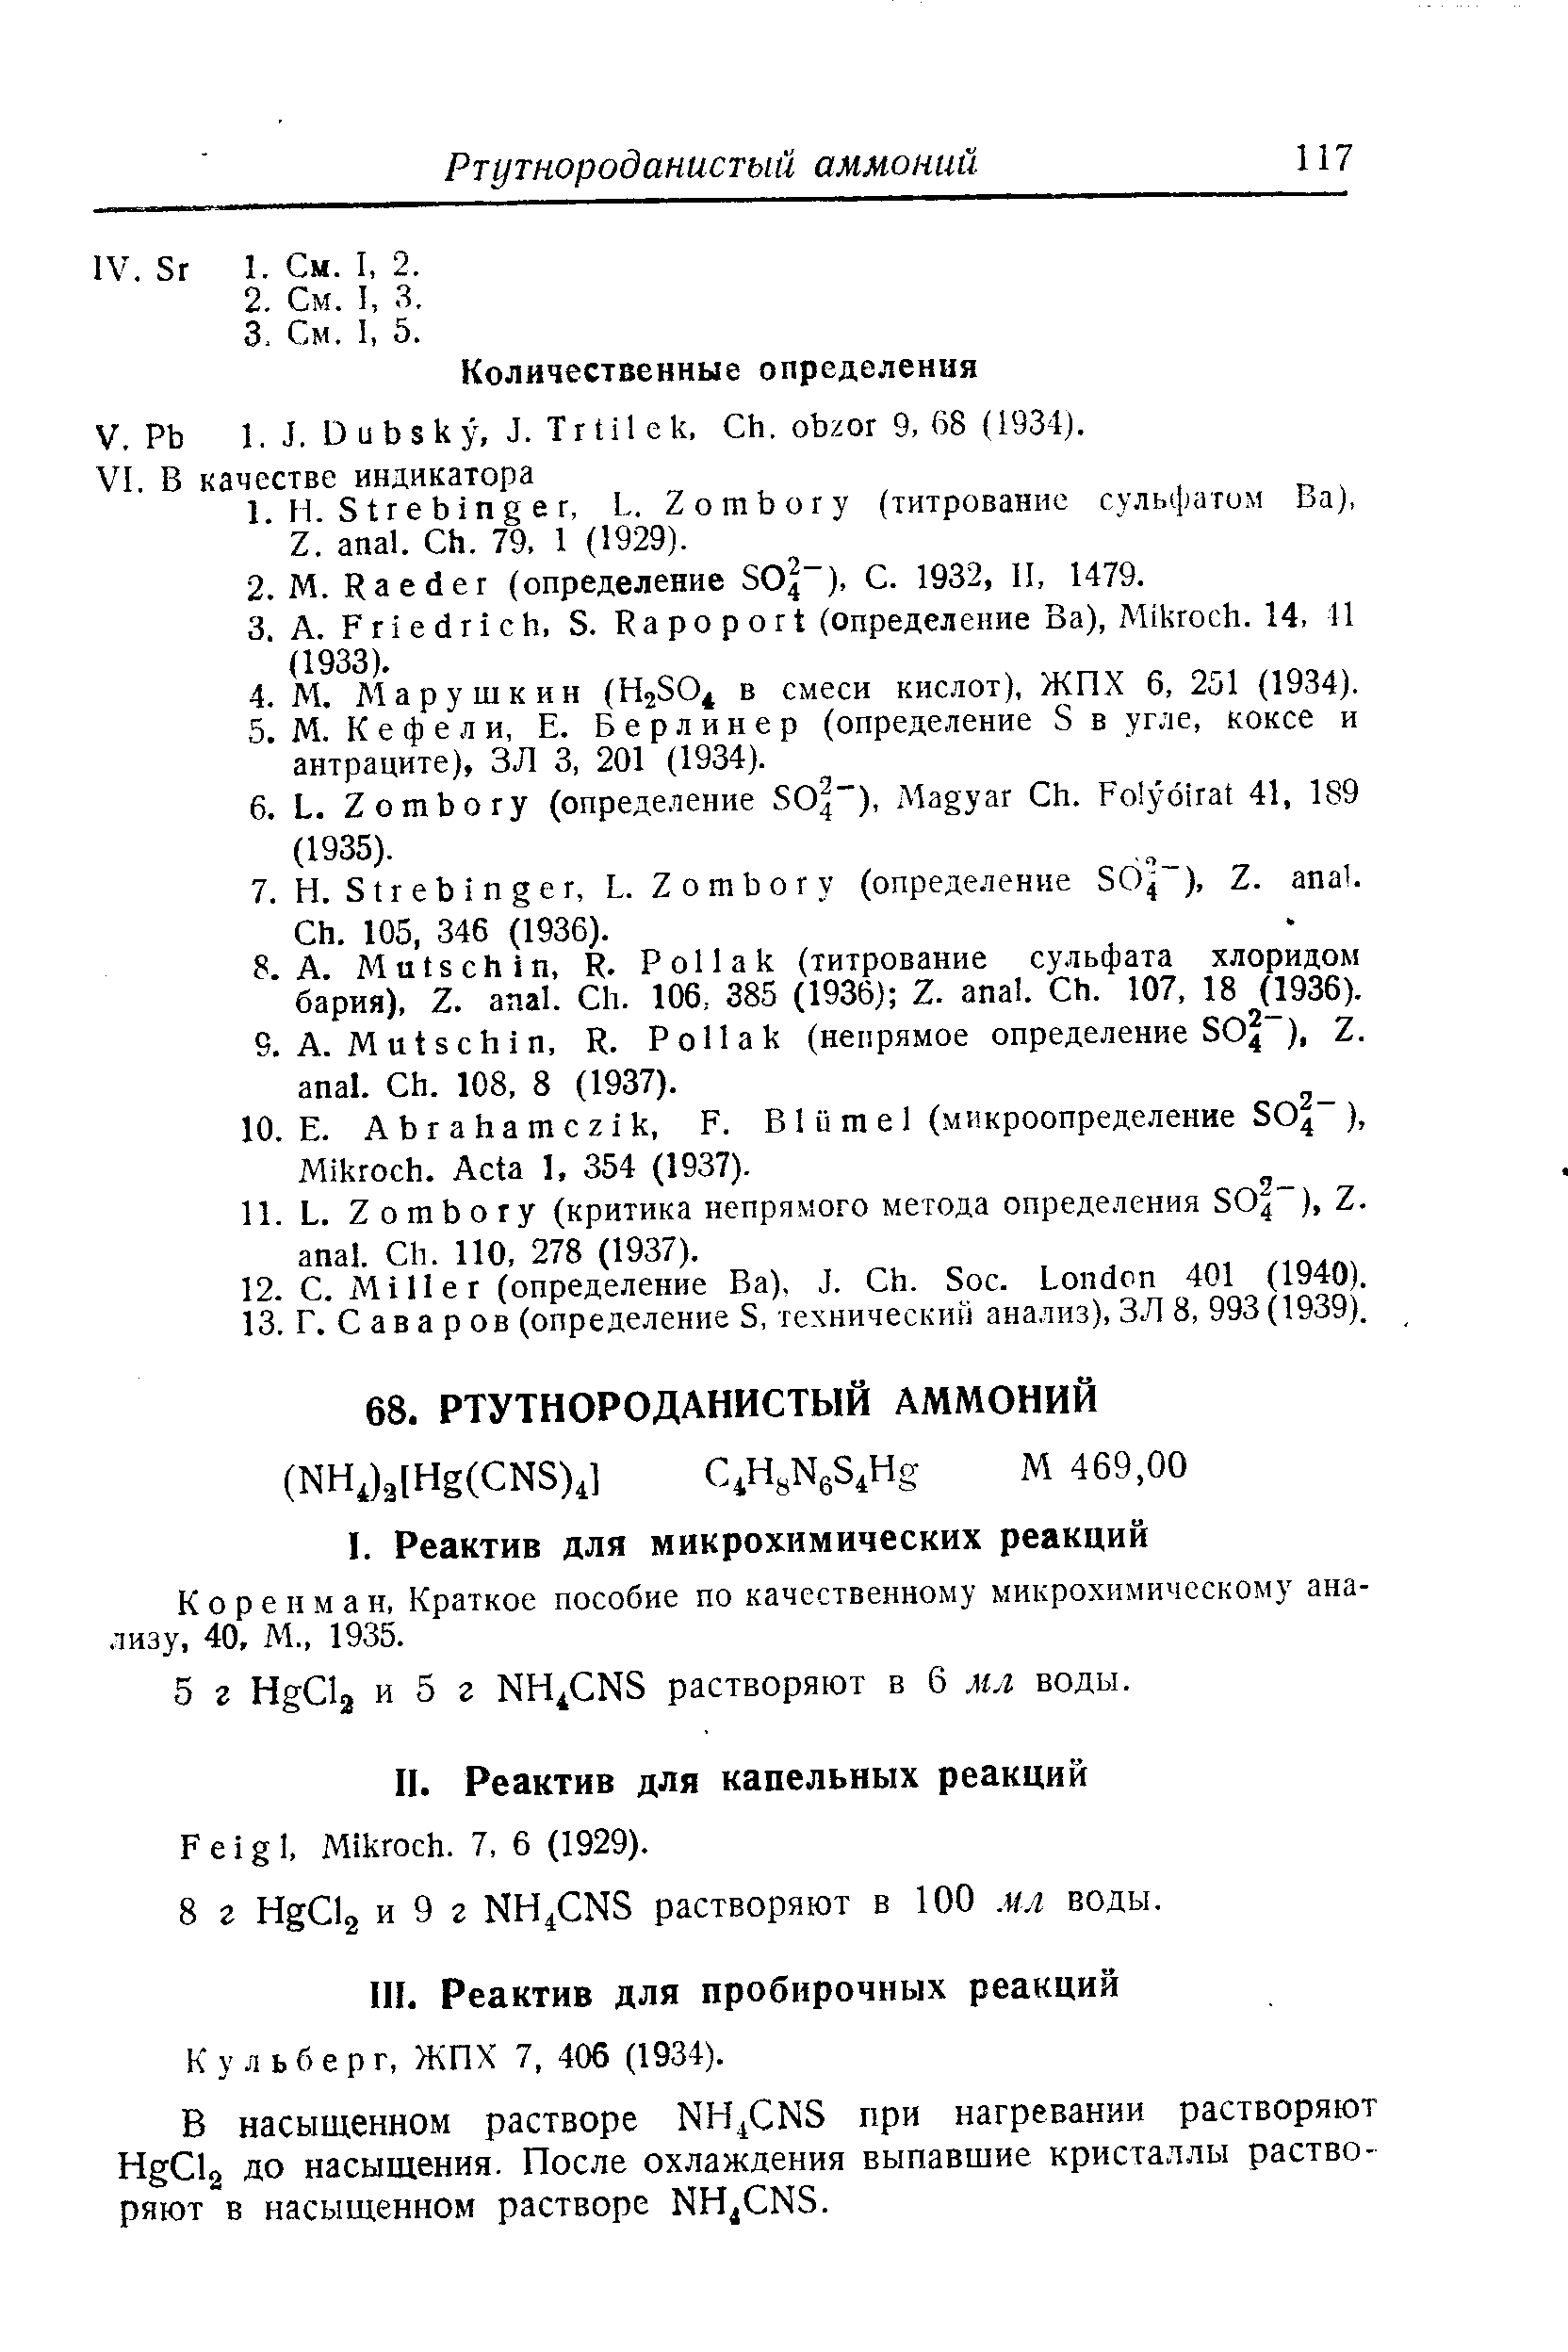 Коренман, Краткое пособие по качественному микрохимическому анализу, 40, М., 1935.